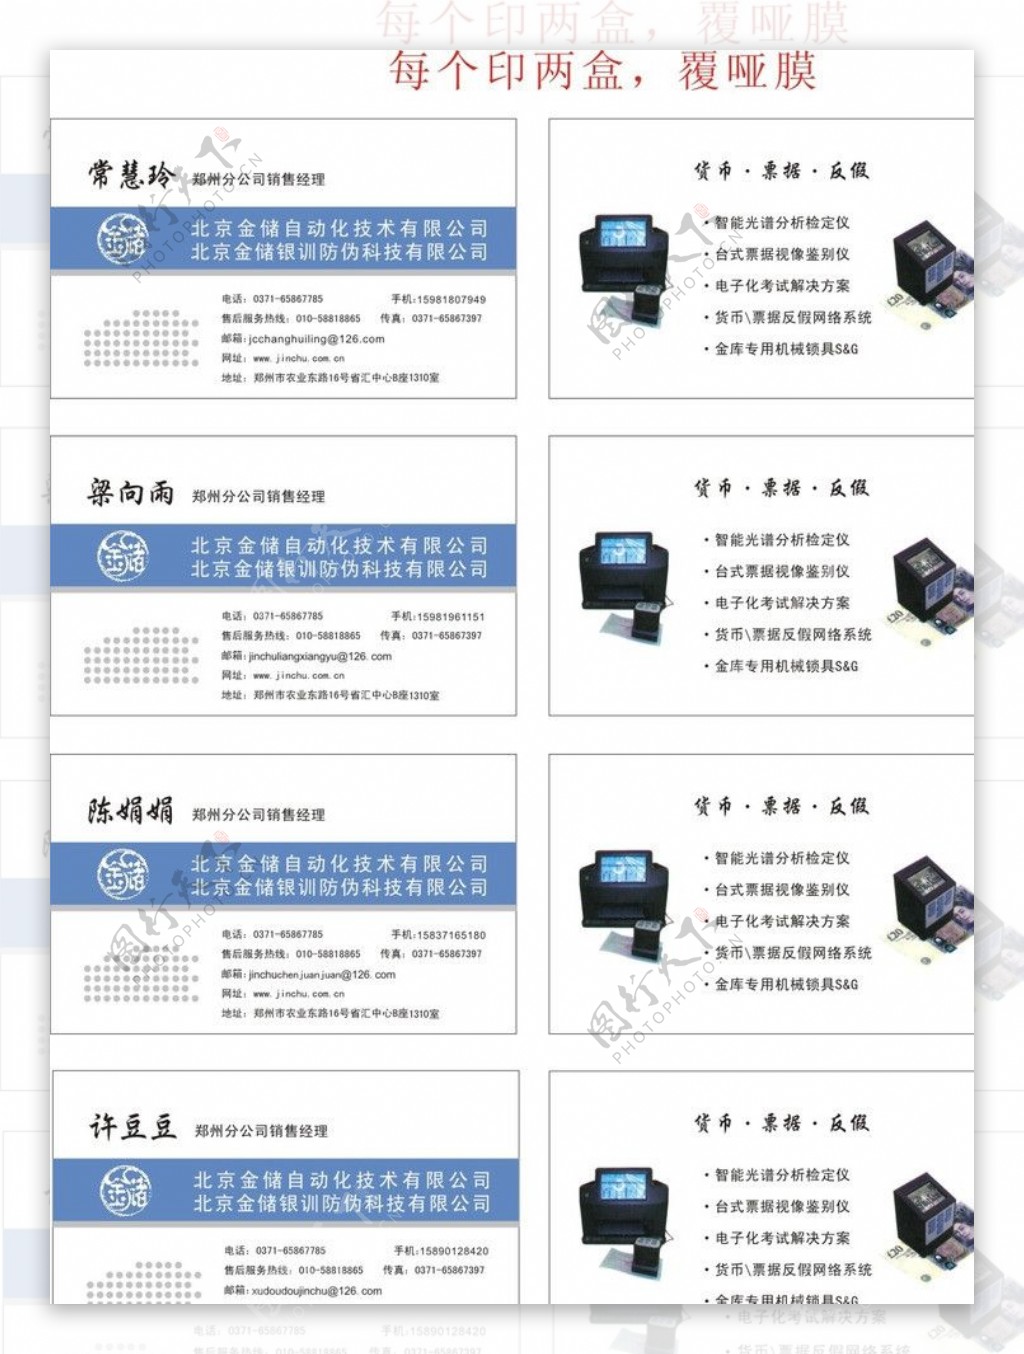 北京金储自动化技术名图片